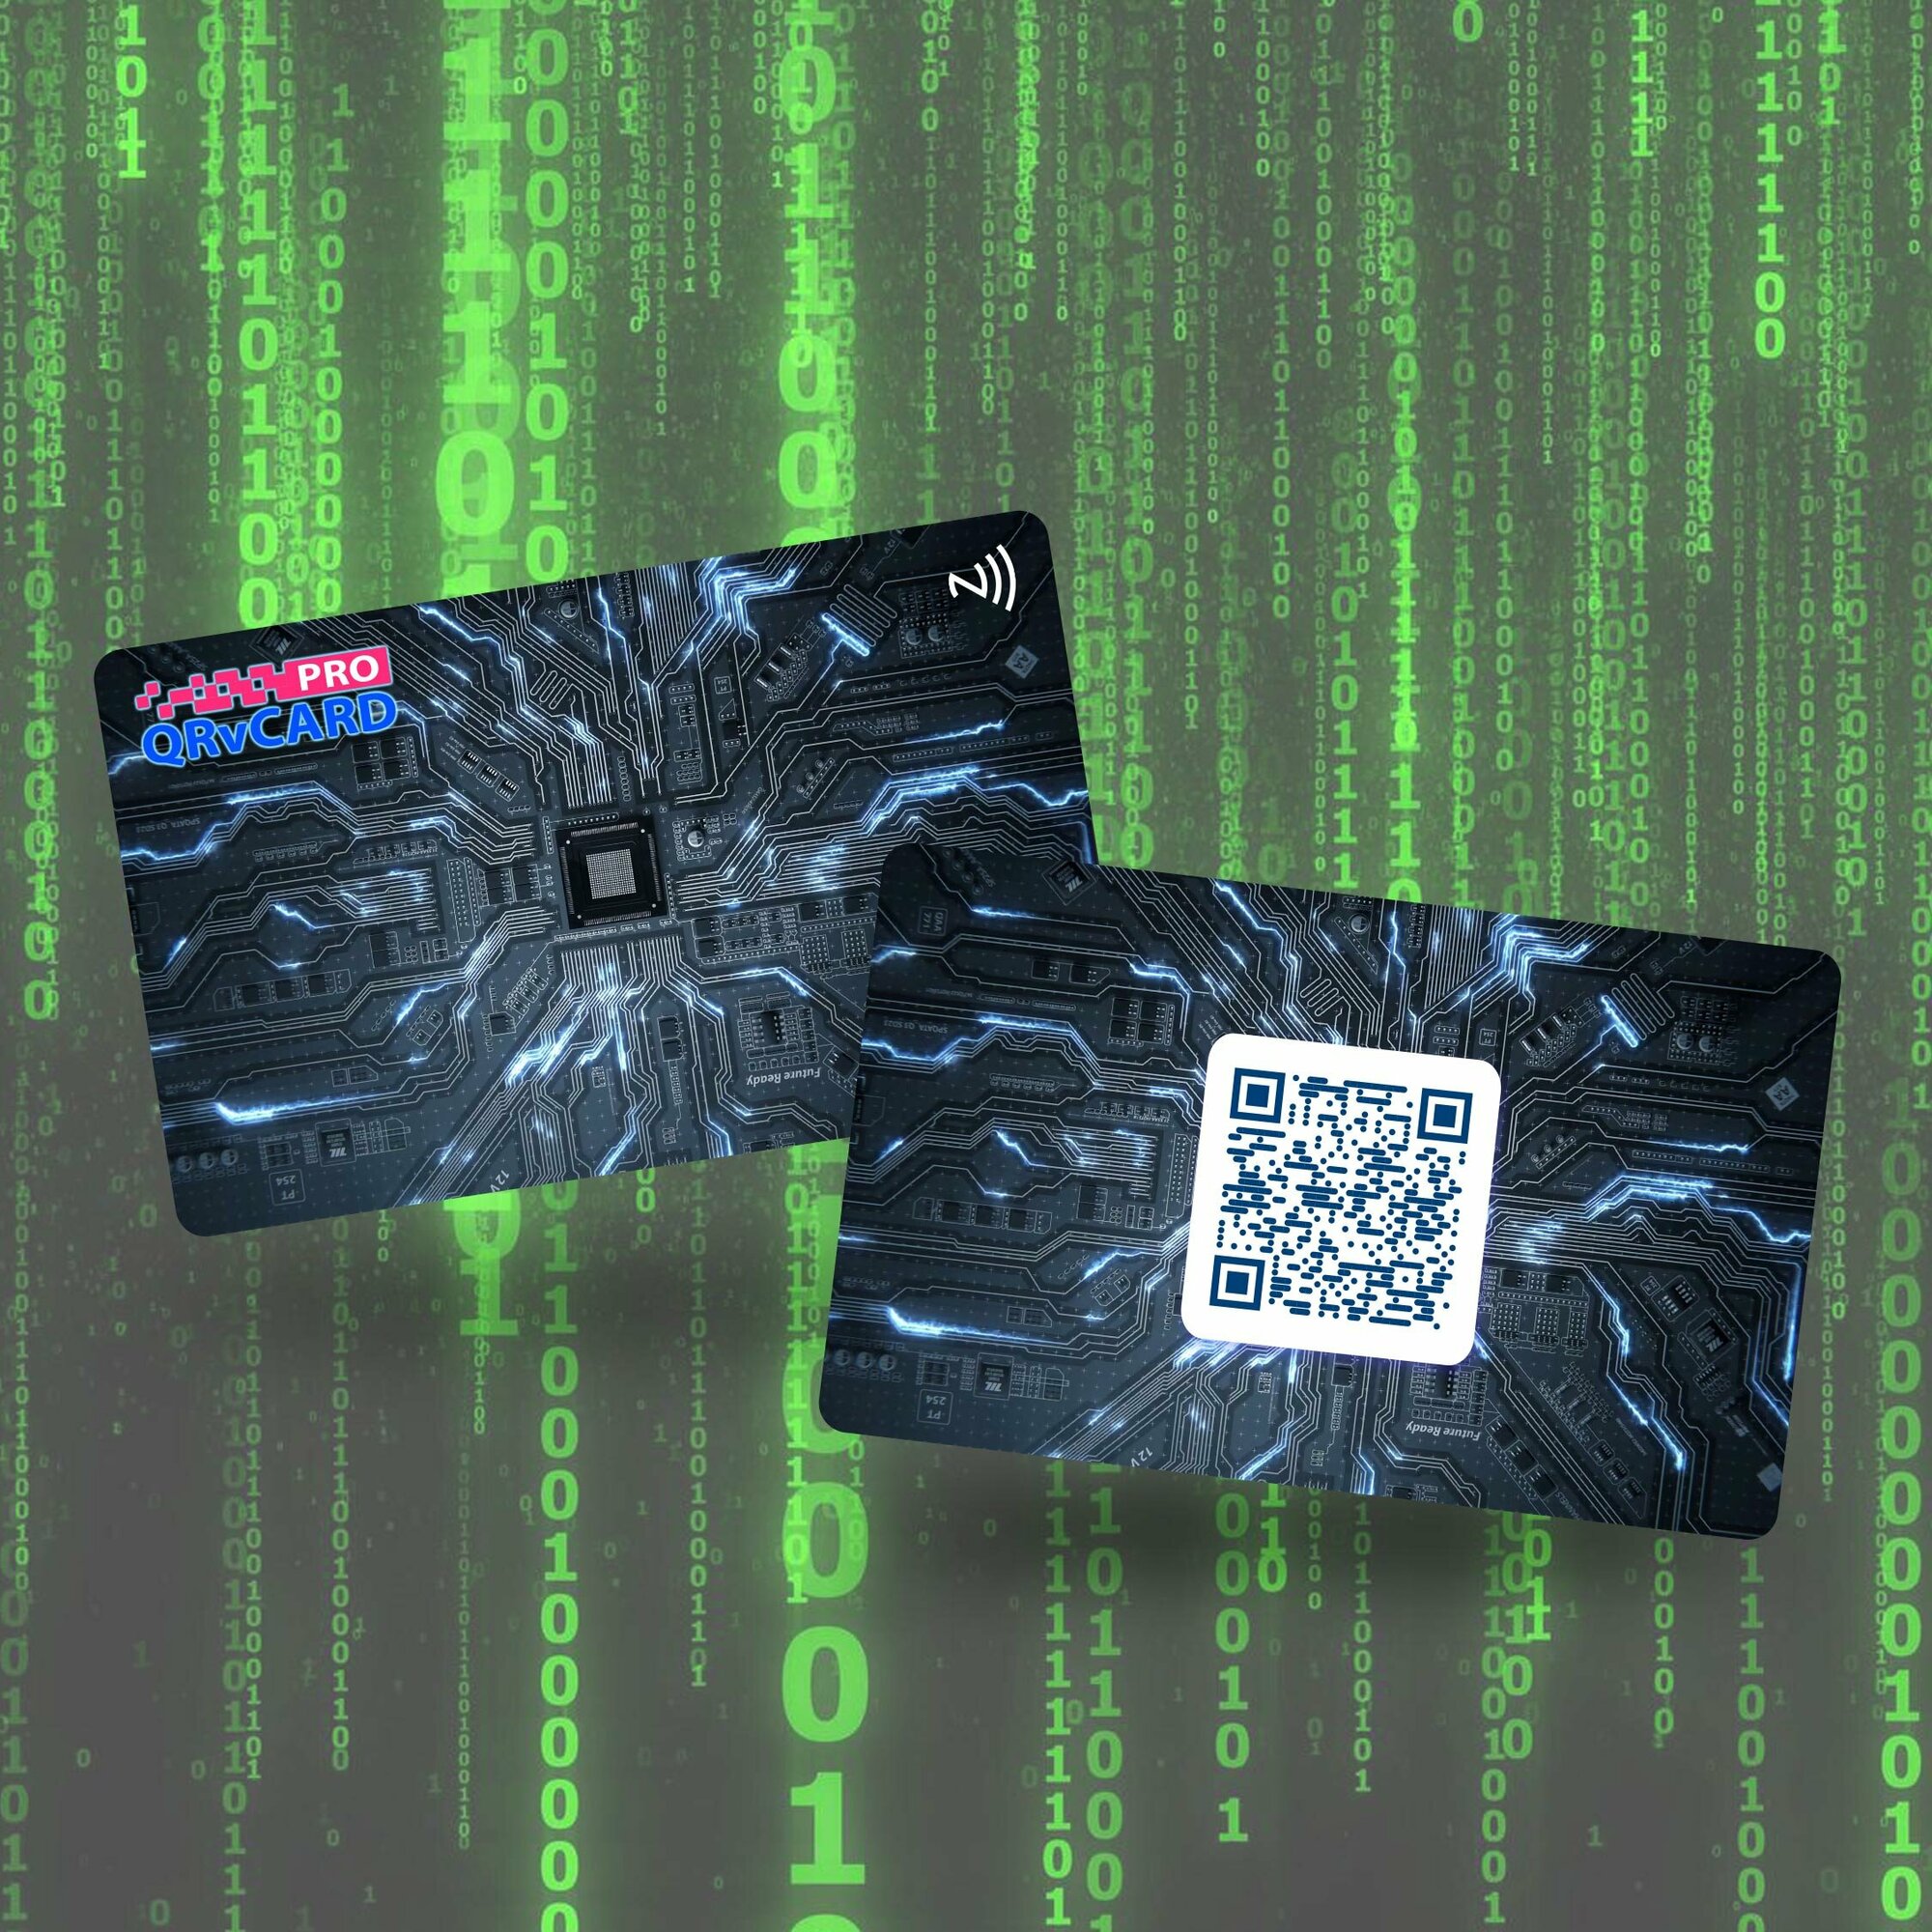 Умная электронная визитка на NFC-карте с бесплатной виртуальной картой